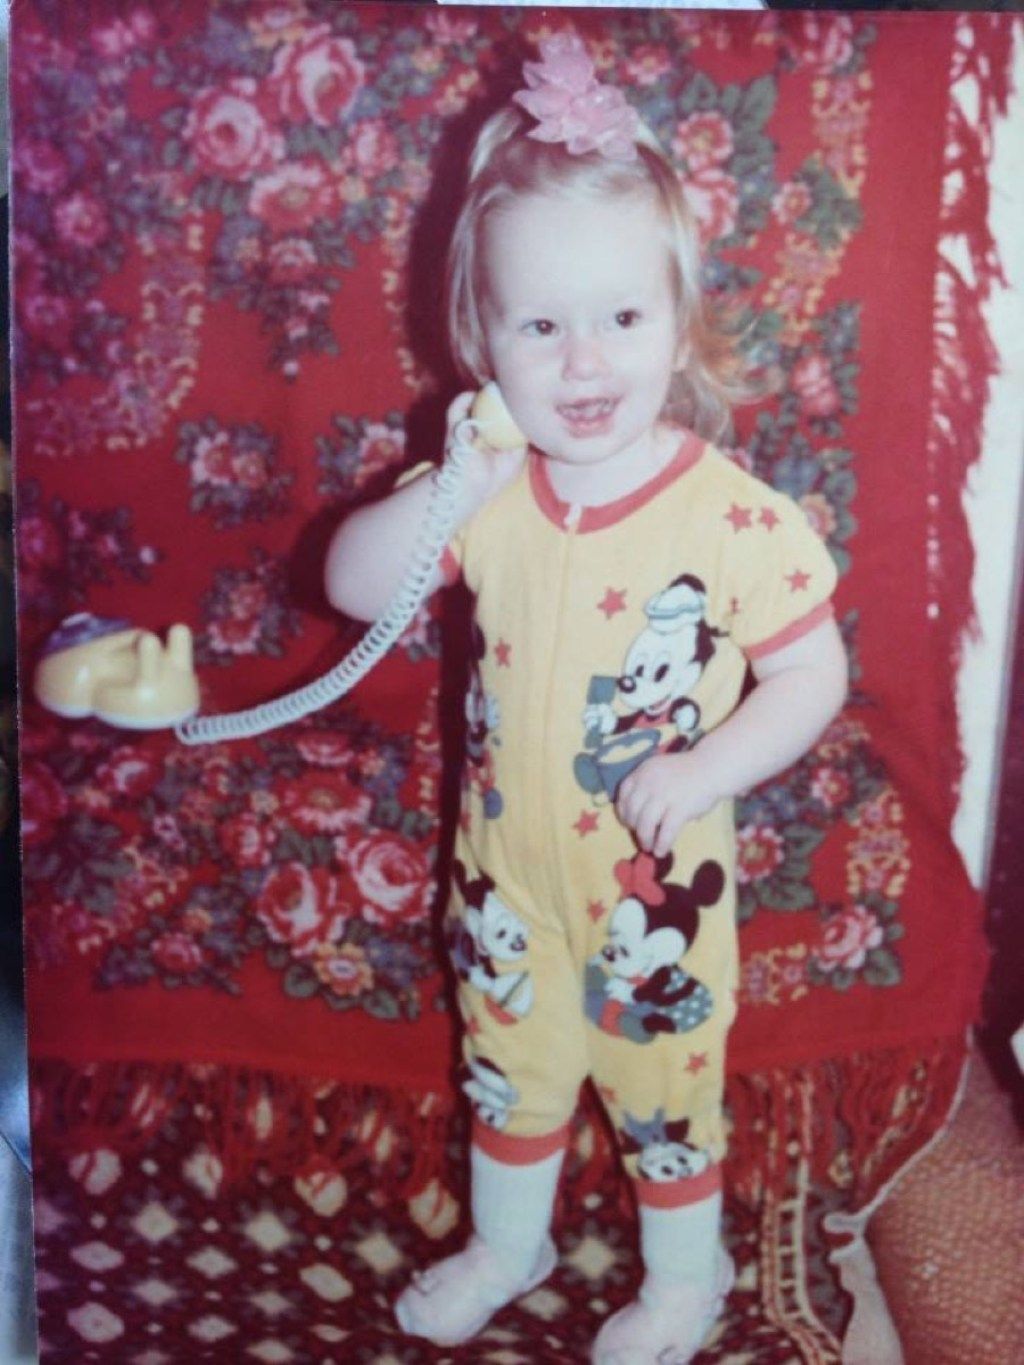 Bebé de los 80 con ropa de Mickey Mouse, moda de los 80